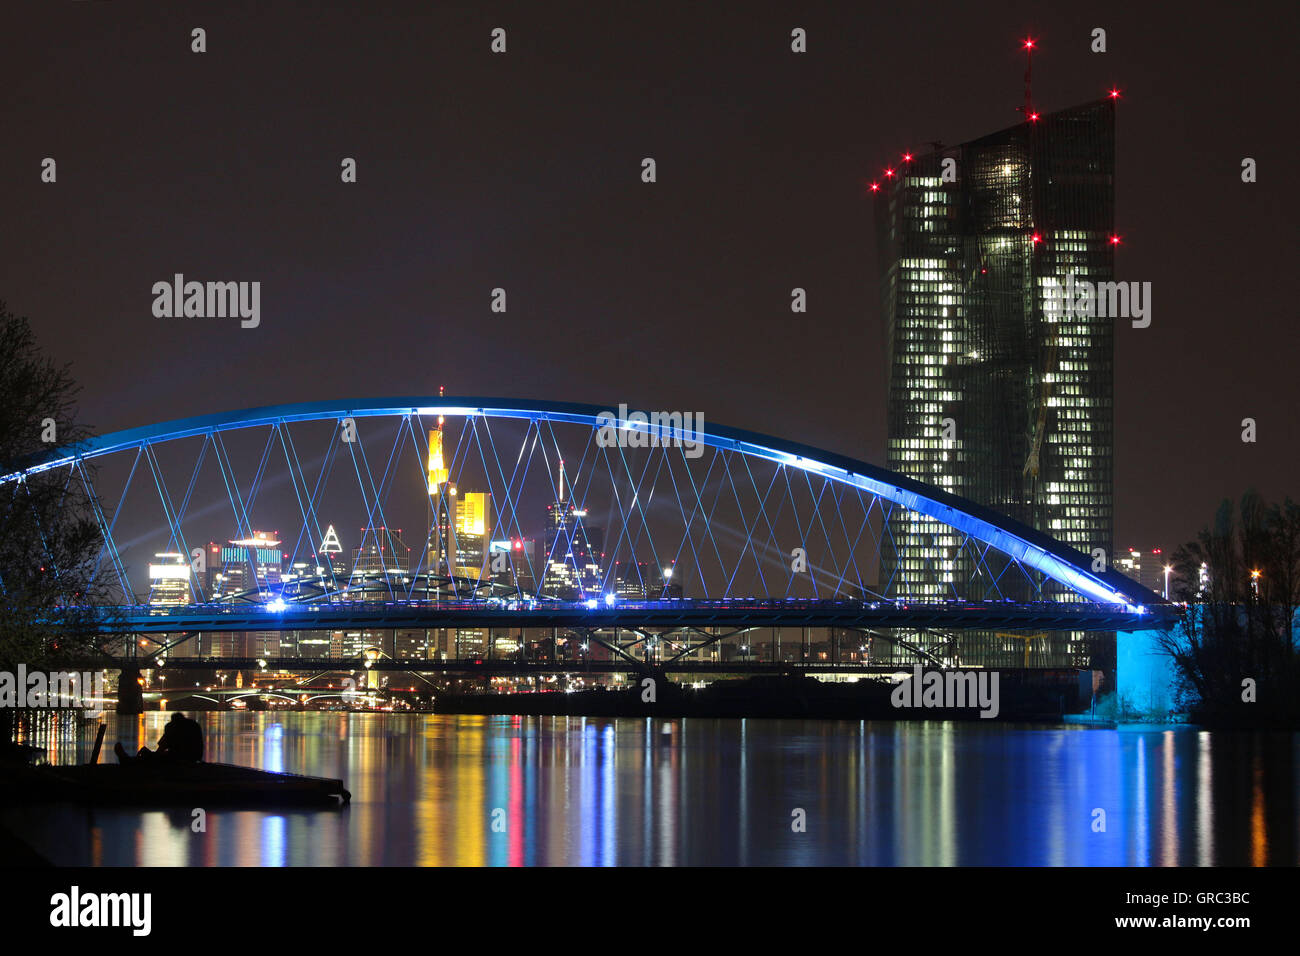 Skyline di distretto bancario e la nuova Banca centrale europea di Francoforte a torre di notte Foto Stock